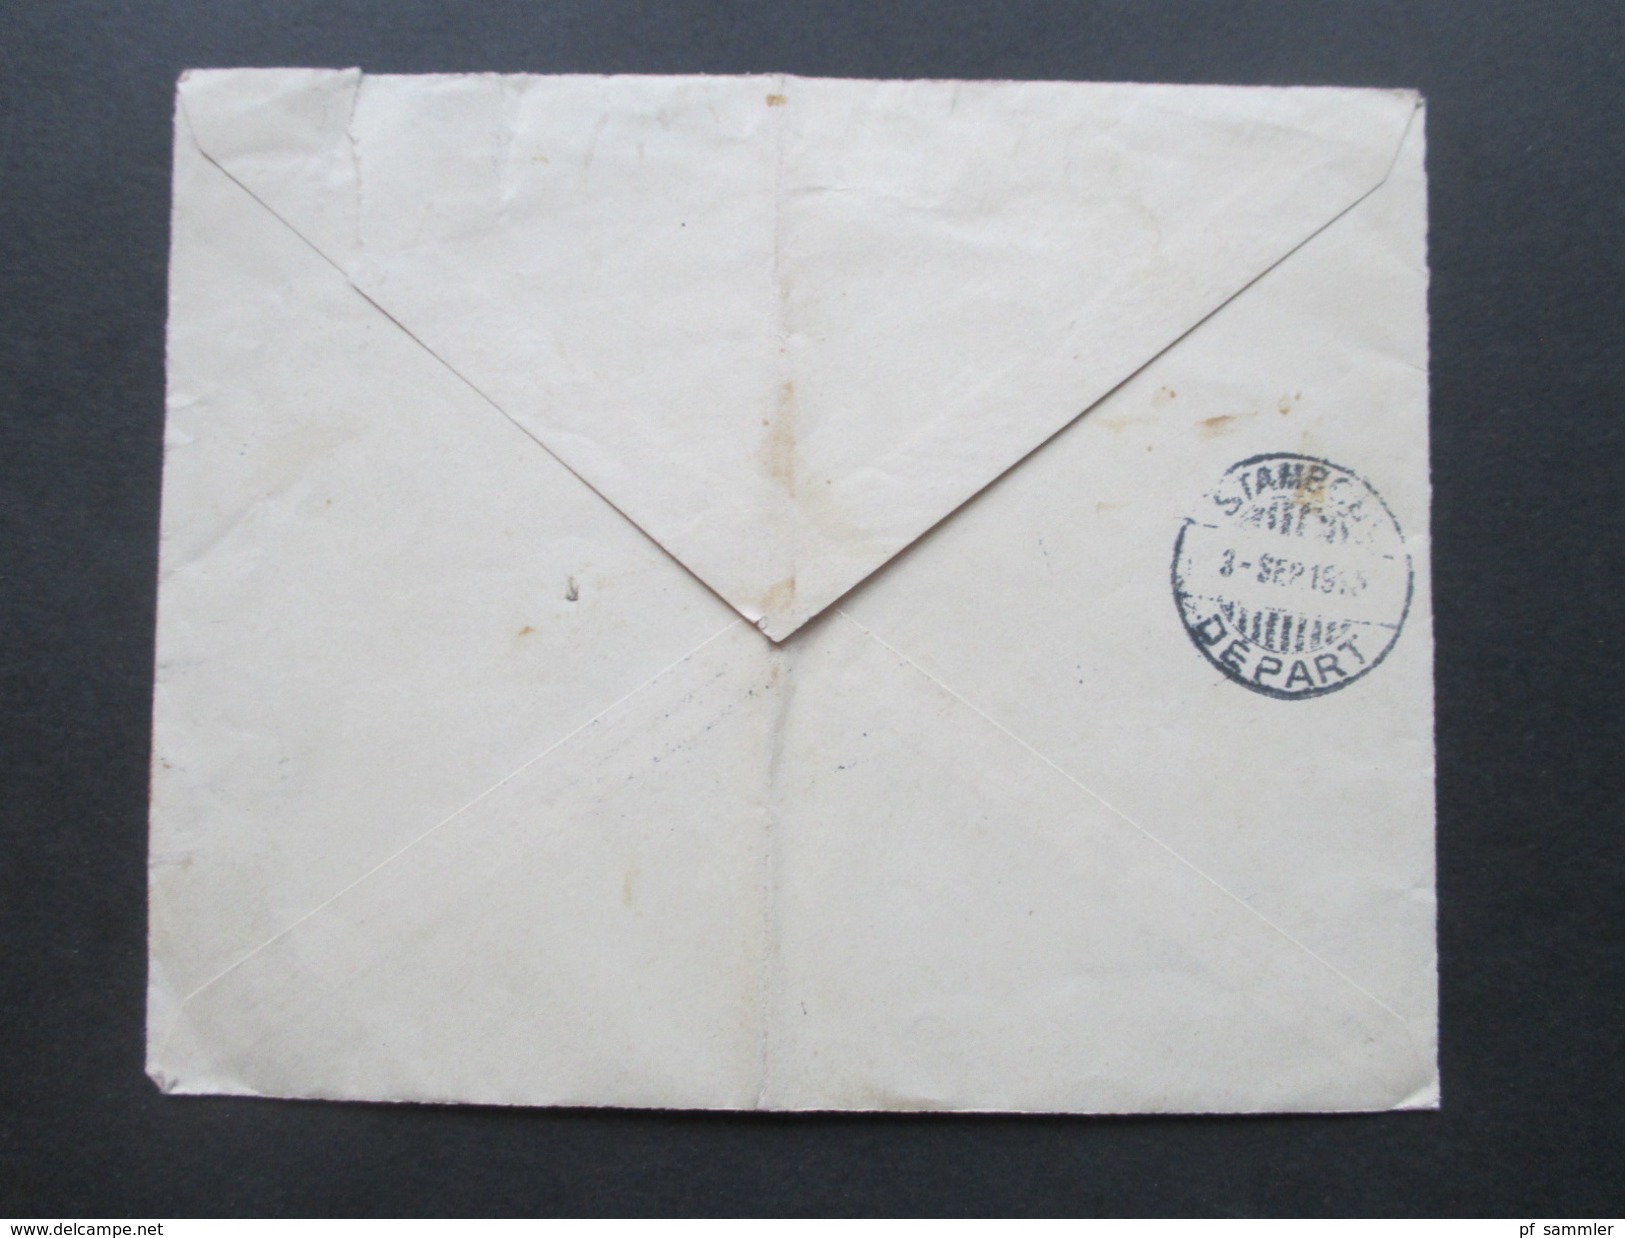 Türkei 1915 Brief von Constaninople - Langendorf Mährisch Neustadt. schwarzer Kastenstempel. Cigaretten Papierfabrik